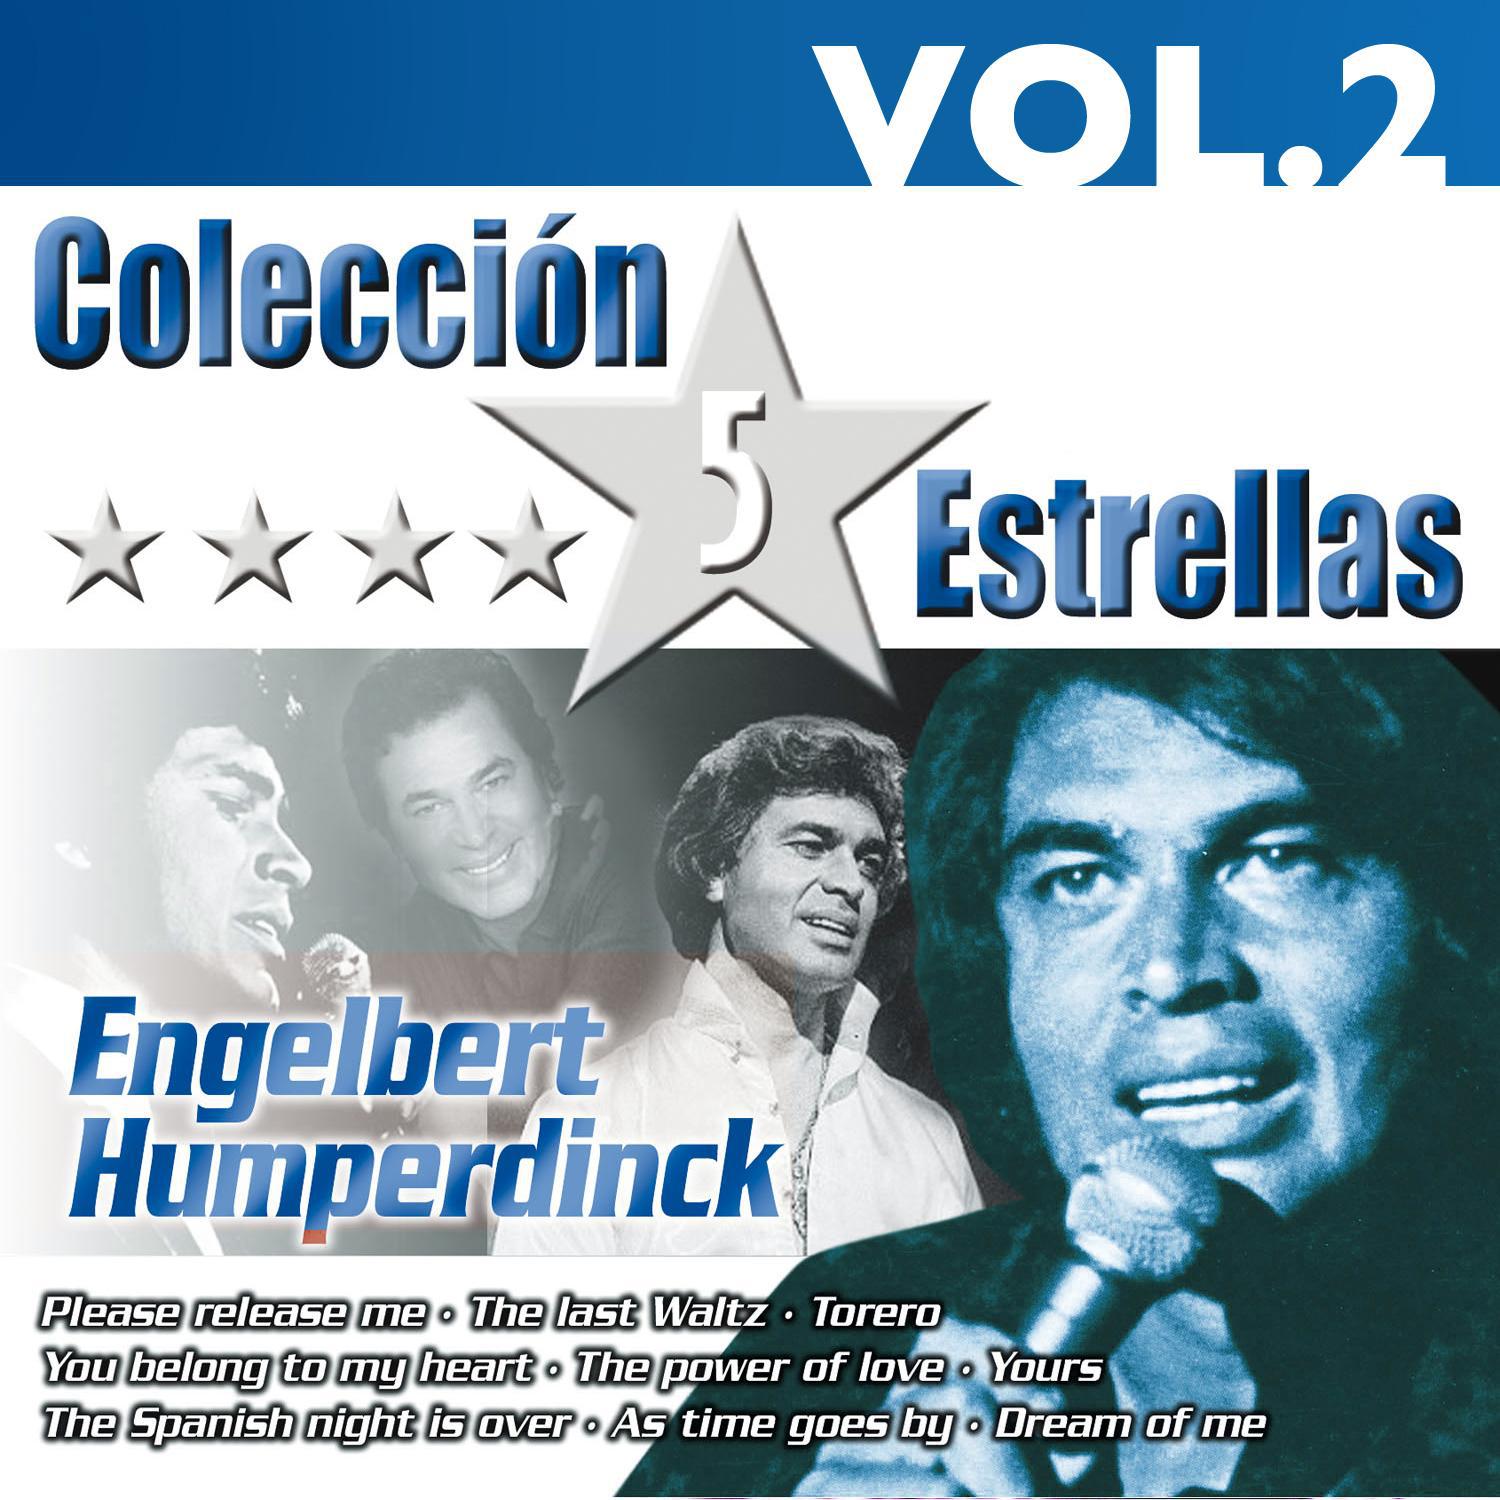 Colección 5 Estrellas. Engelbert Humperdinck. Vol. 2专辑